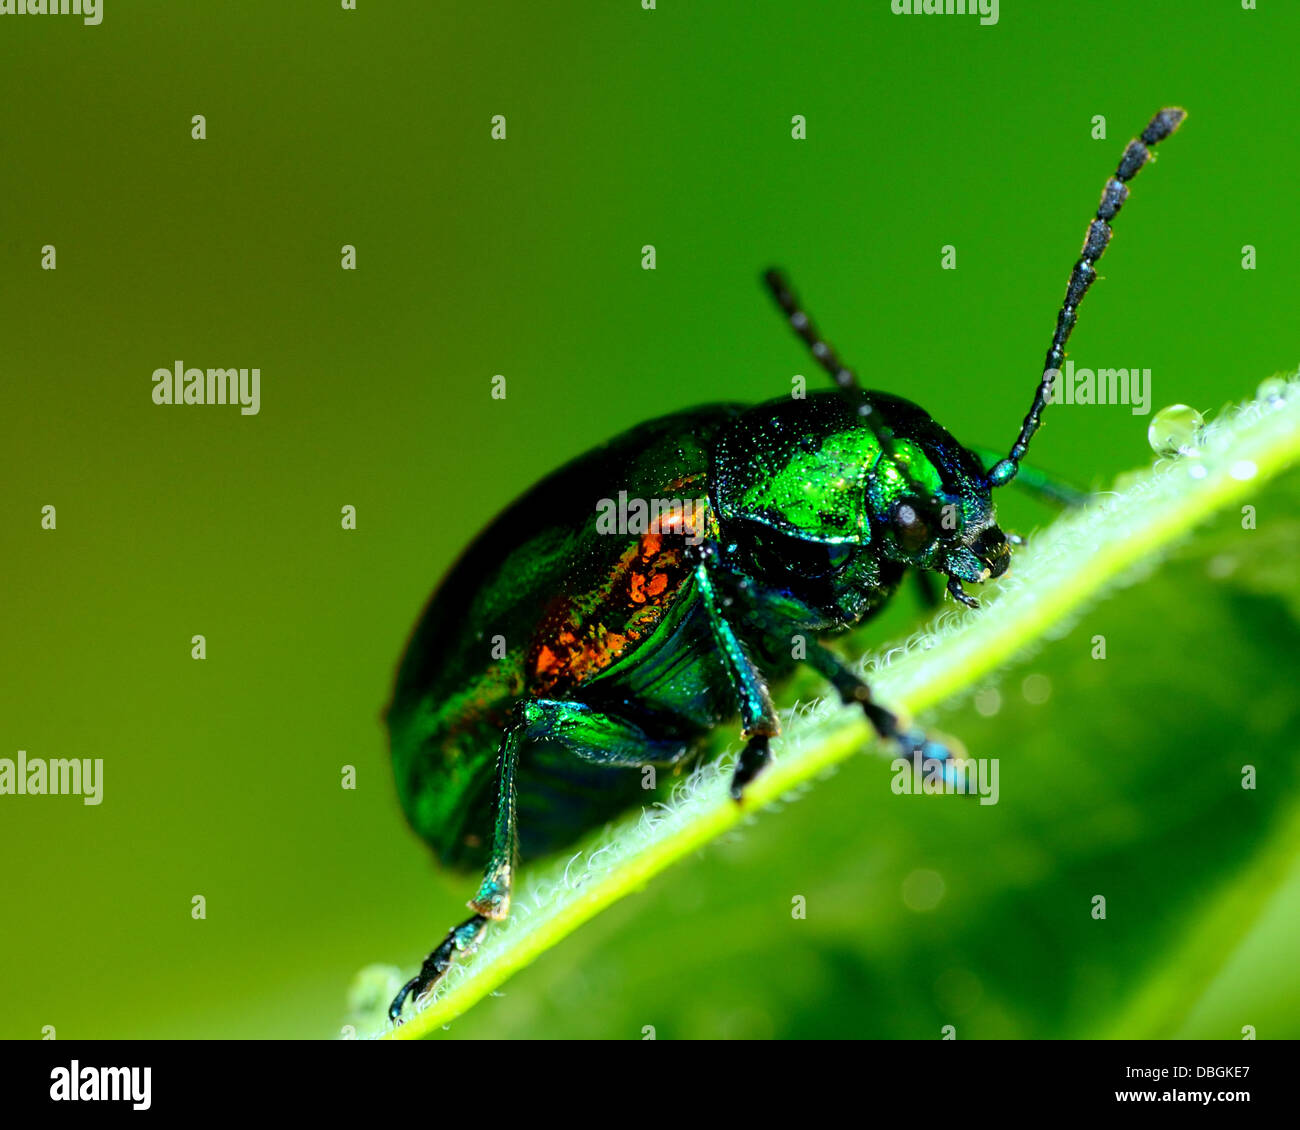 L'apocyn Beetle perché sur une plante verte feuille. Banque D'Images